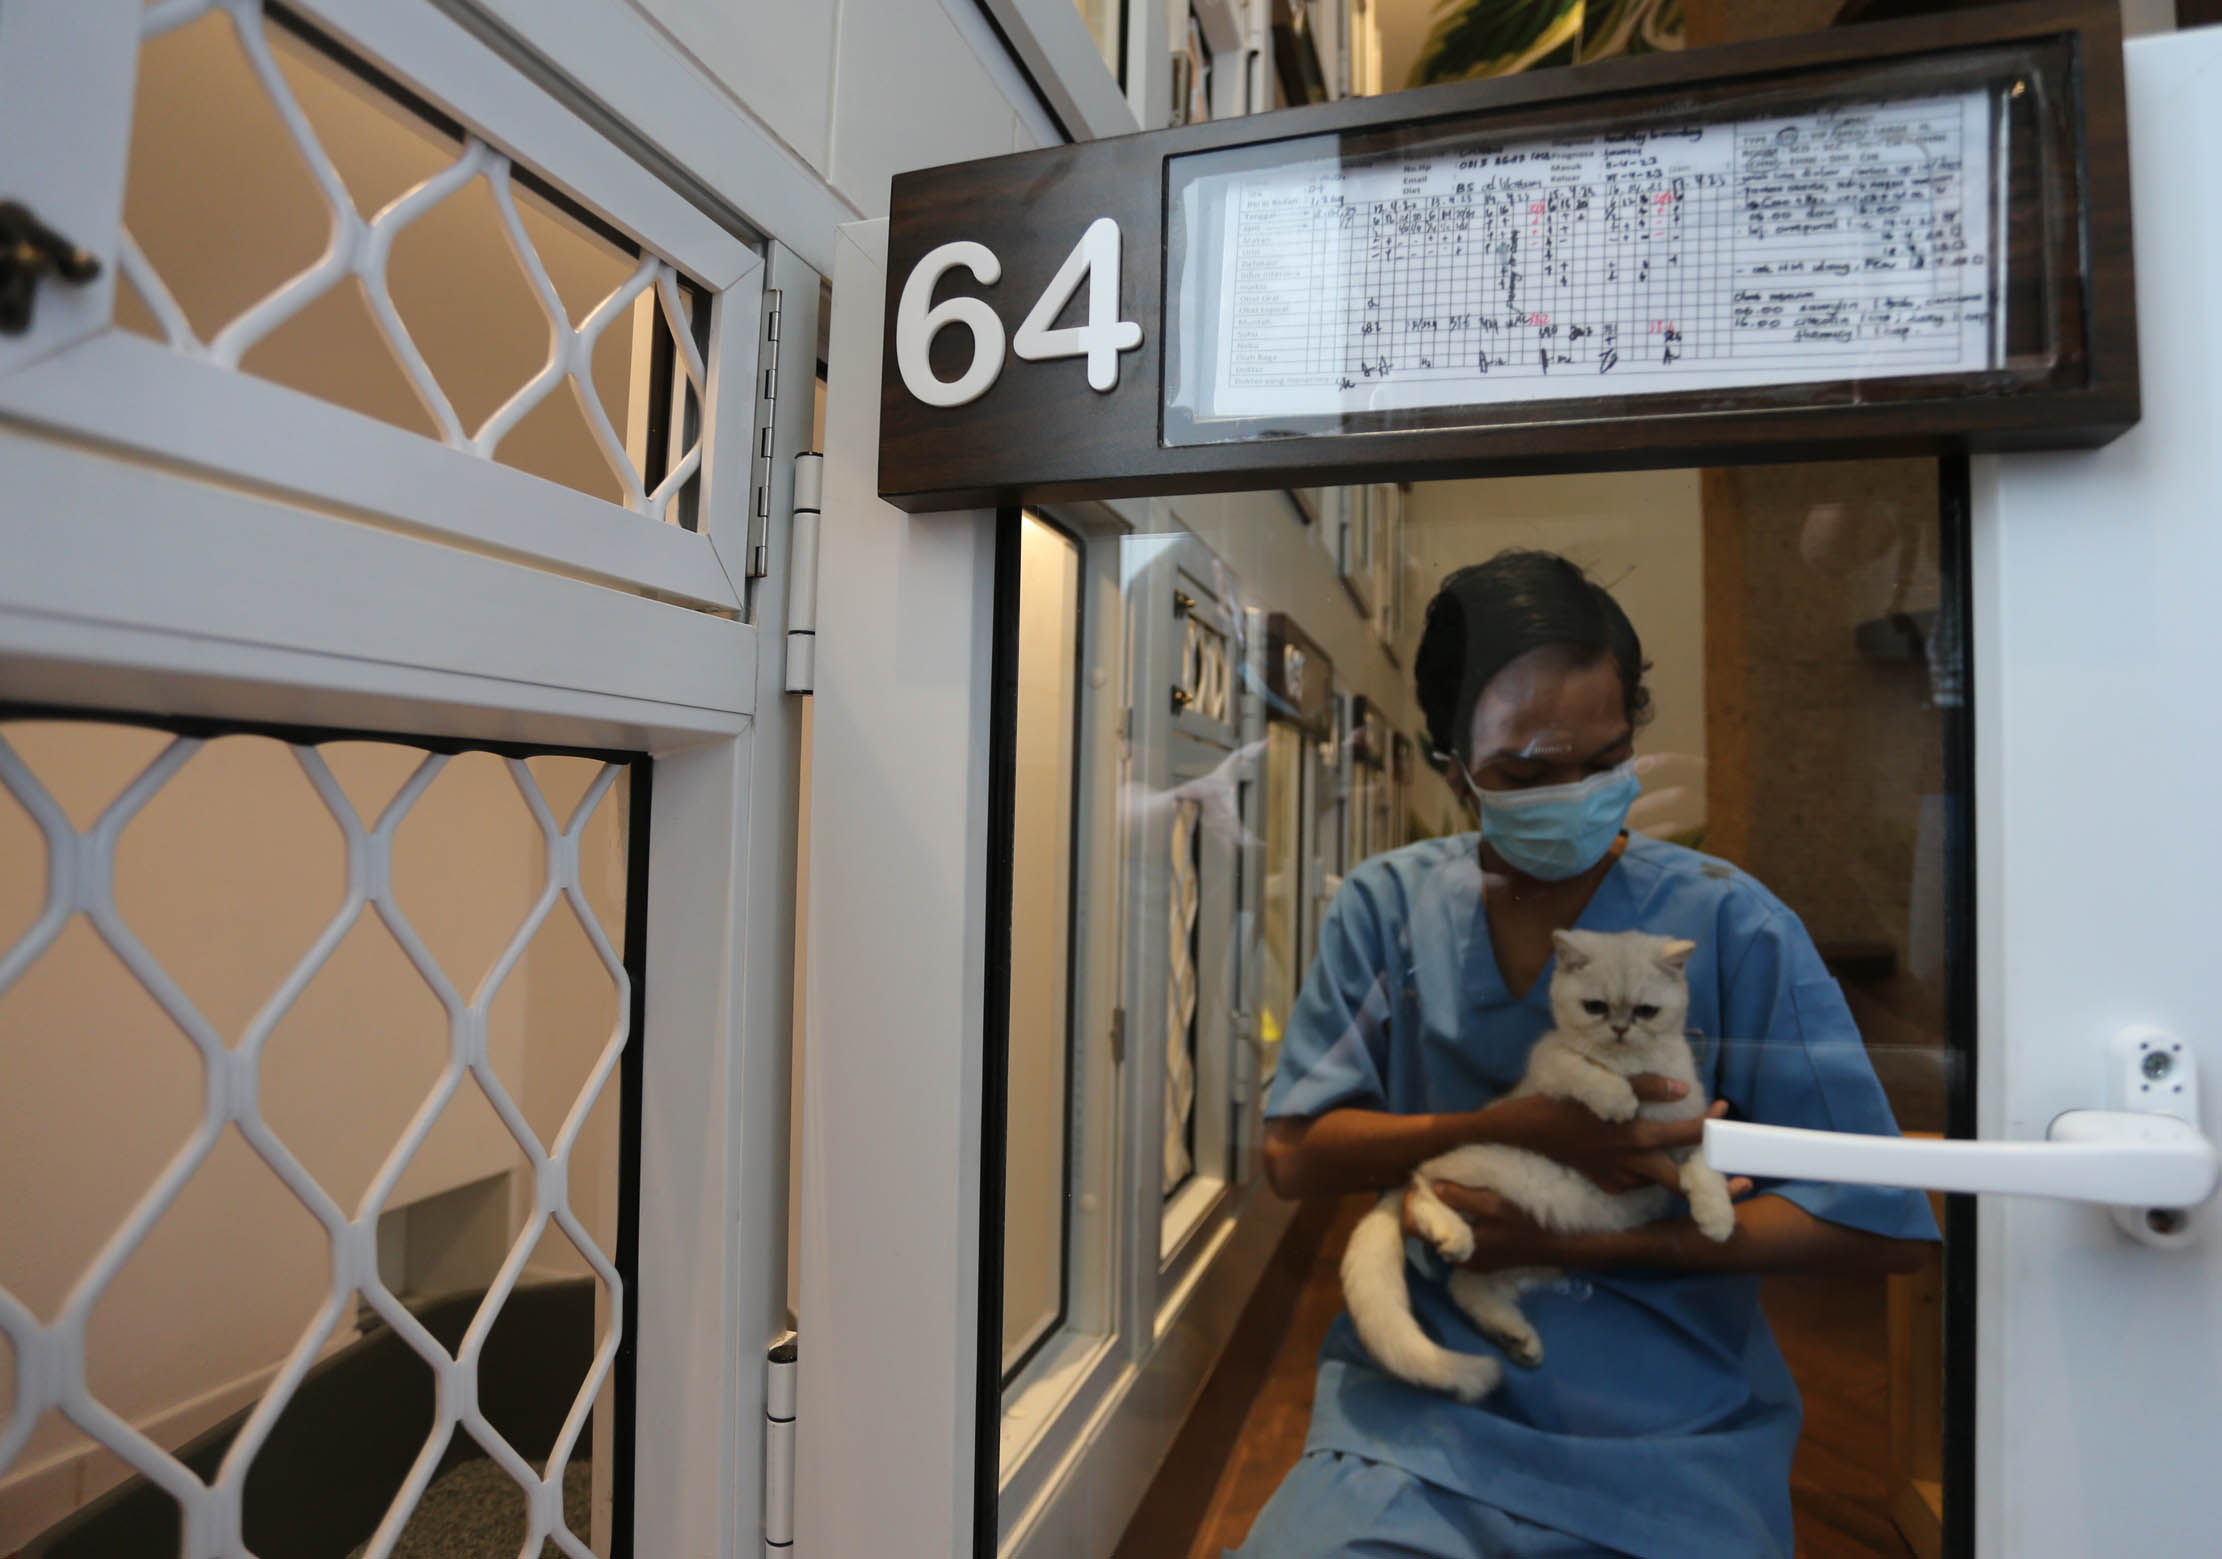 Suasana di sebuah klinik hewan sekaligus melayani jasa penitipan hewan peliharaan di kawasan Alam Sutra, Tangerang. Menjelang hari raya seperti natal atau leban seperti saat ini pesanan mereka meningkat drastis bahkan selalu full booking. Selasa 18 April 2023. Foto : Panji Asmoro/TrenAsia